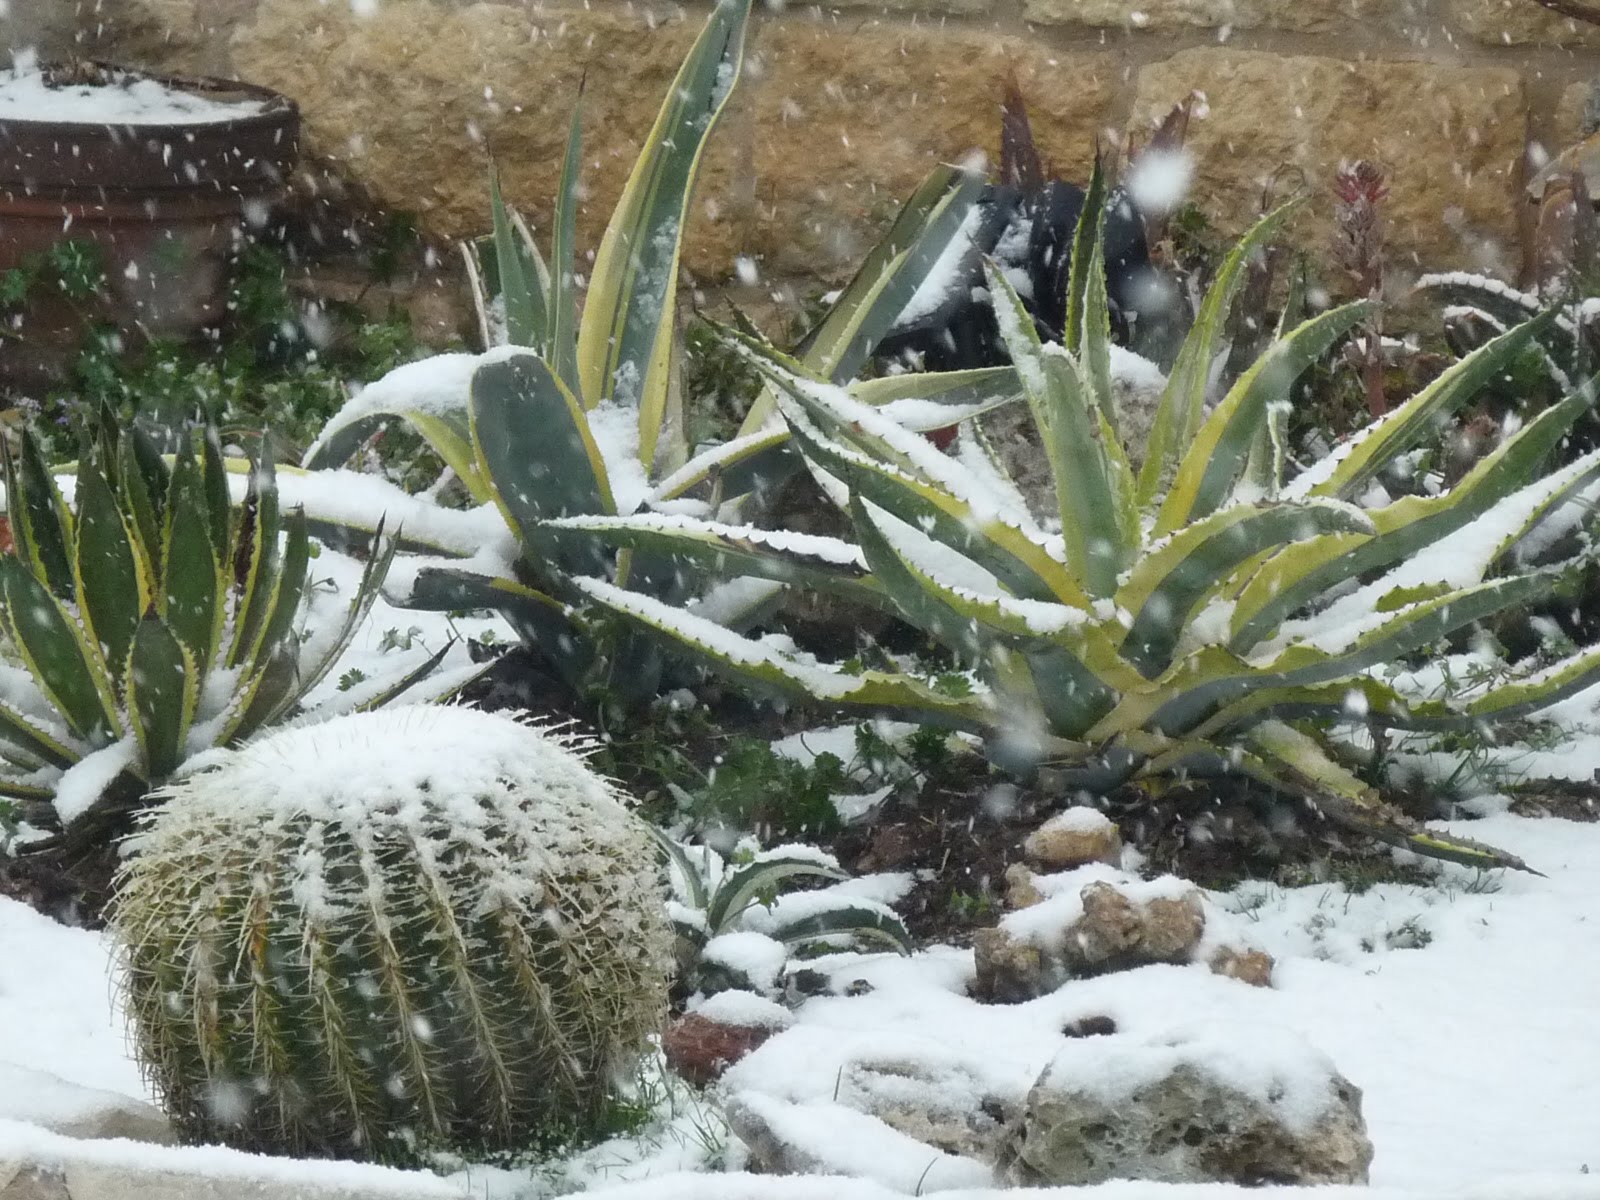 A RARE SNOW GARDEN IN AUSTIN, TX | Central Texas Gardening